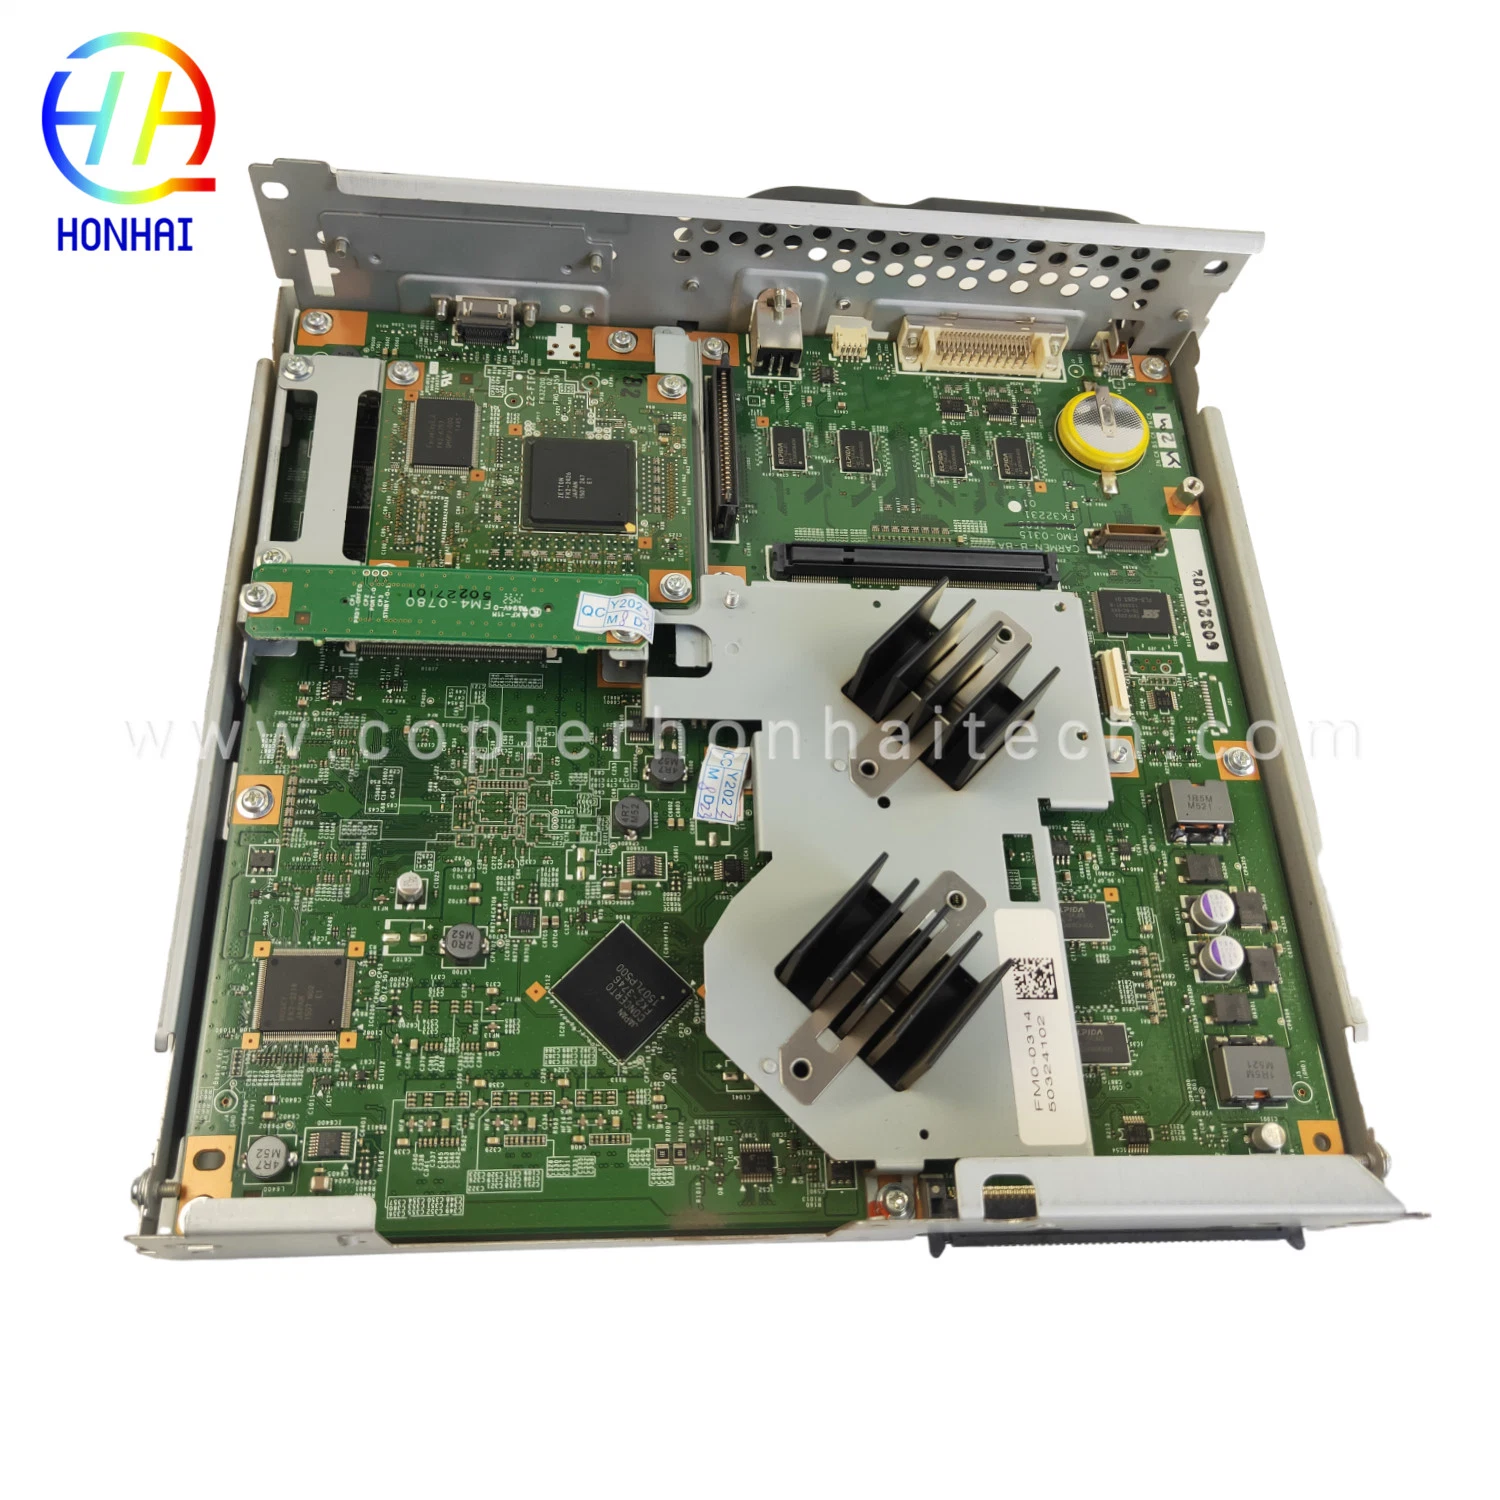 مجموعة لوحة PCB لوحدة التحكم الرئيسية الأصلية لجهاز Canon IR Advance C5235 C5240 C5240 FM0-0339-000 FM0-0314 FM0-0315